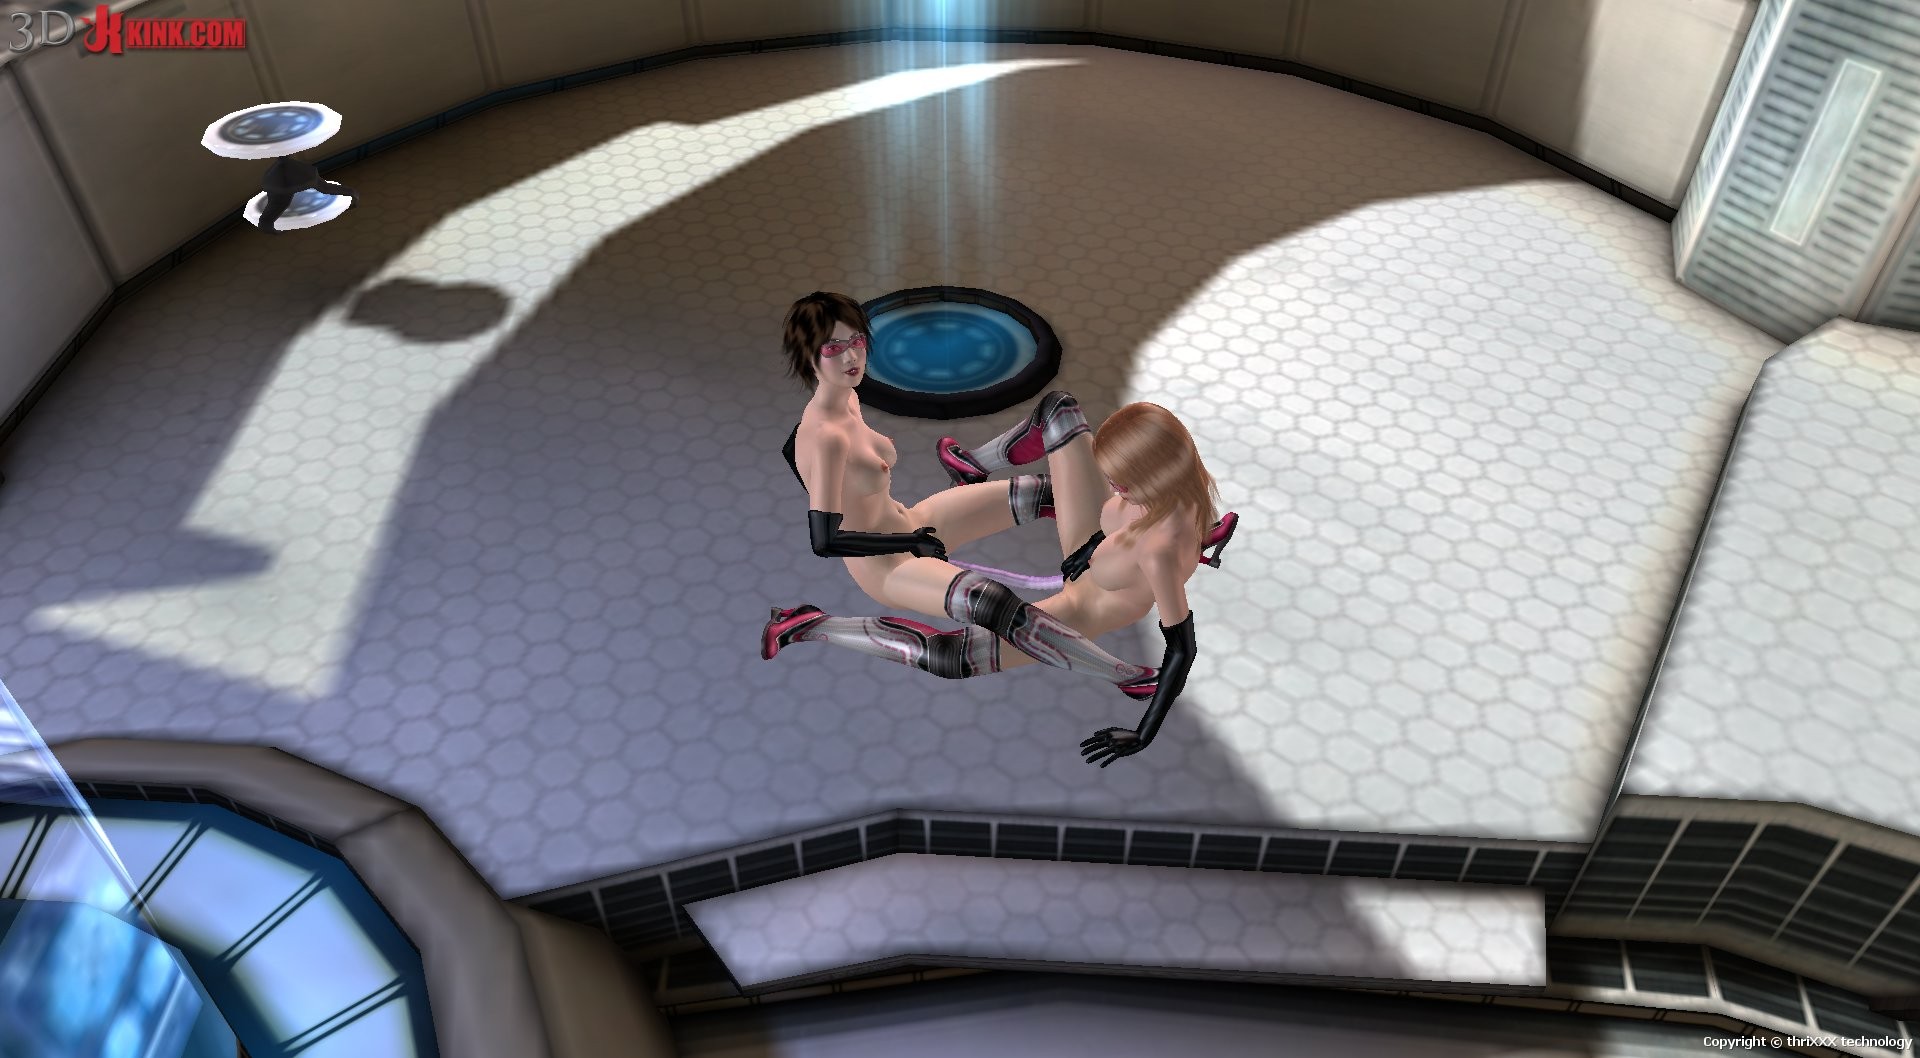 Une action sexuelle bdsm chaude créée dans un jeu de sexe virtuel fétichiste en 3D !
 #69358776